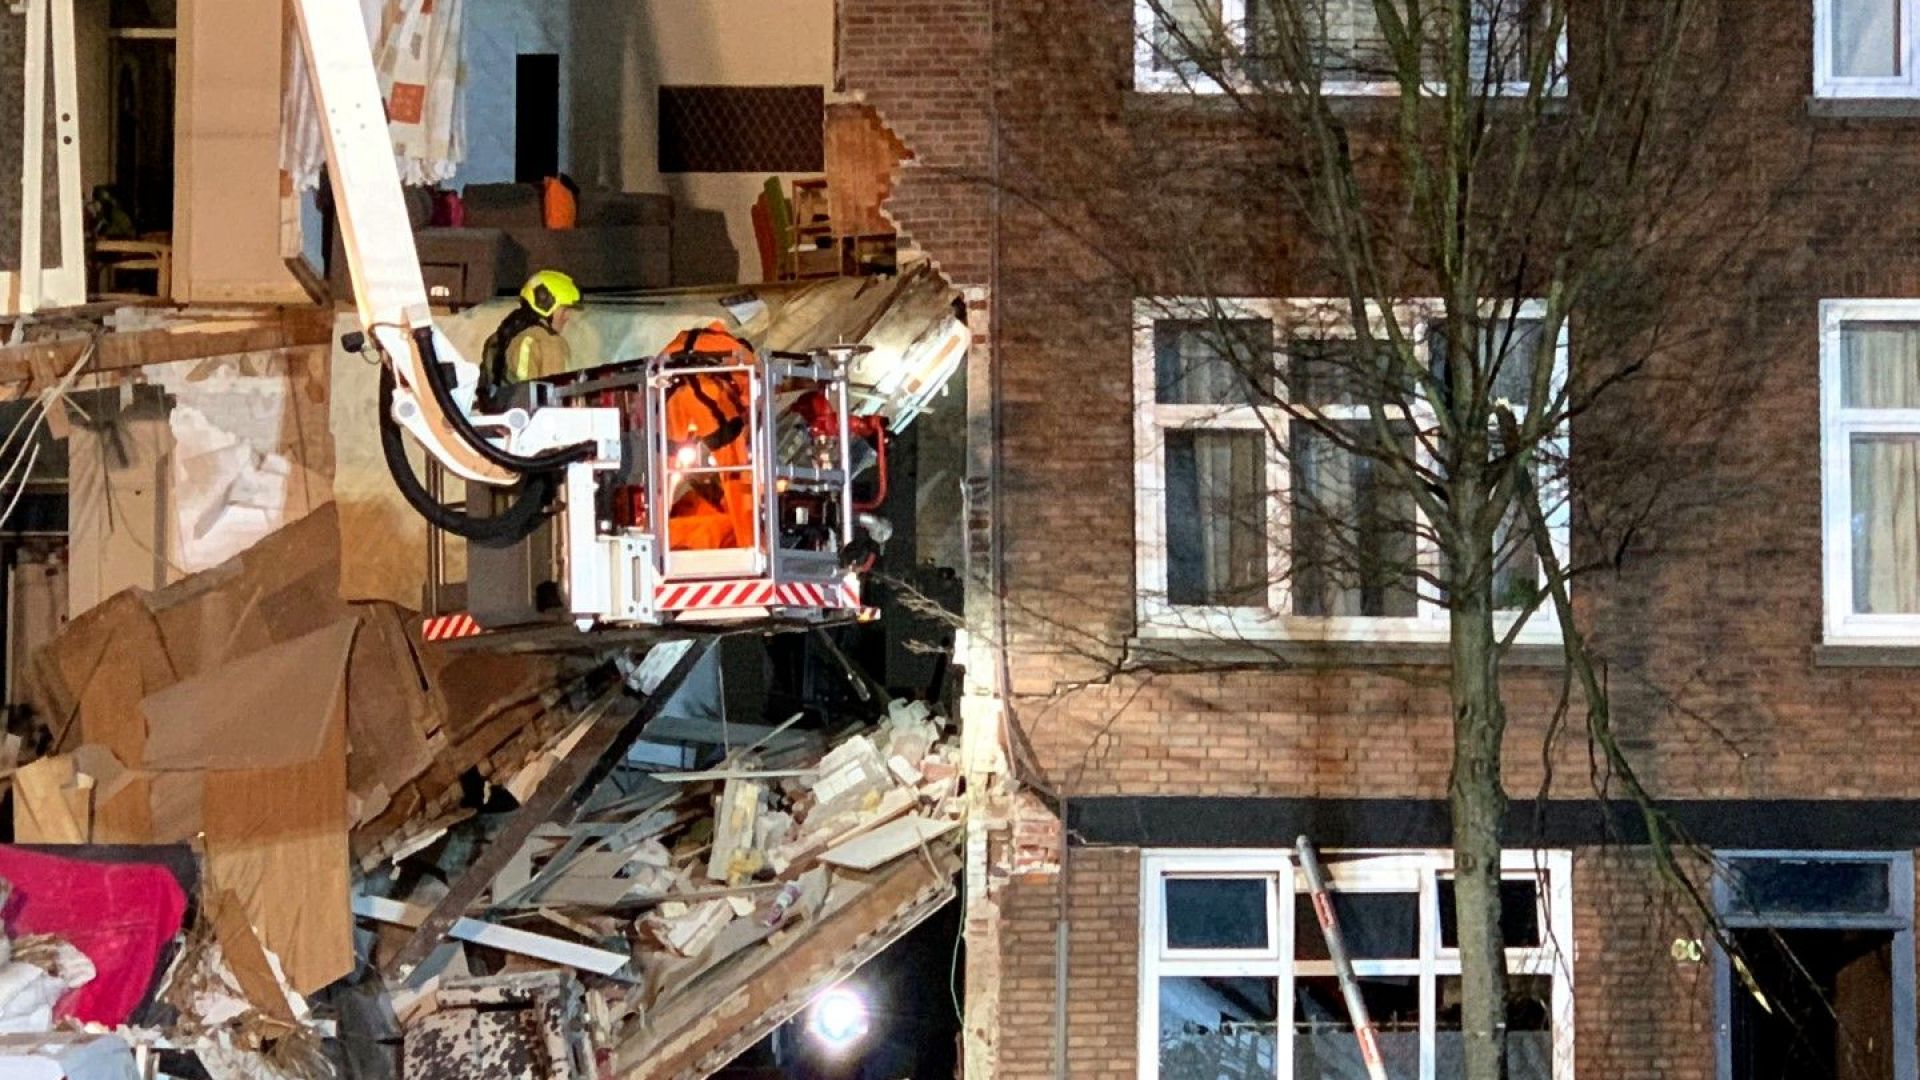 Експлозия причини частично срутване на триетажна сграда в Хага, предаде